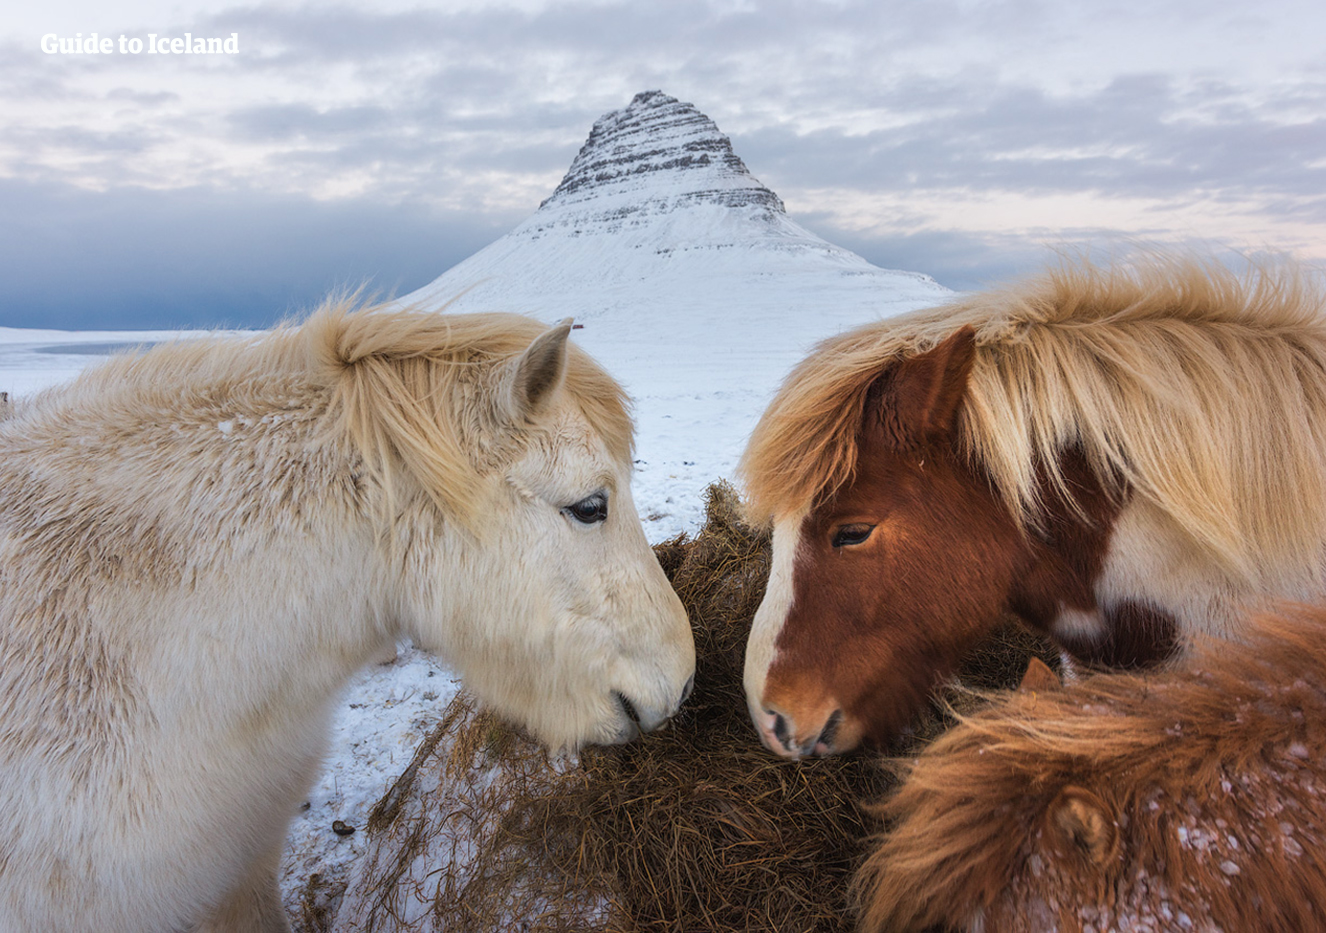 Kirkjufull ภูเขาทางตะวันตกของไอซ์แลนด์ในฤดูหนาวกับม้าไอซ์แลนด์